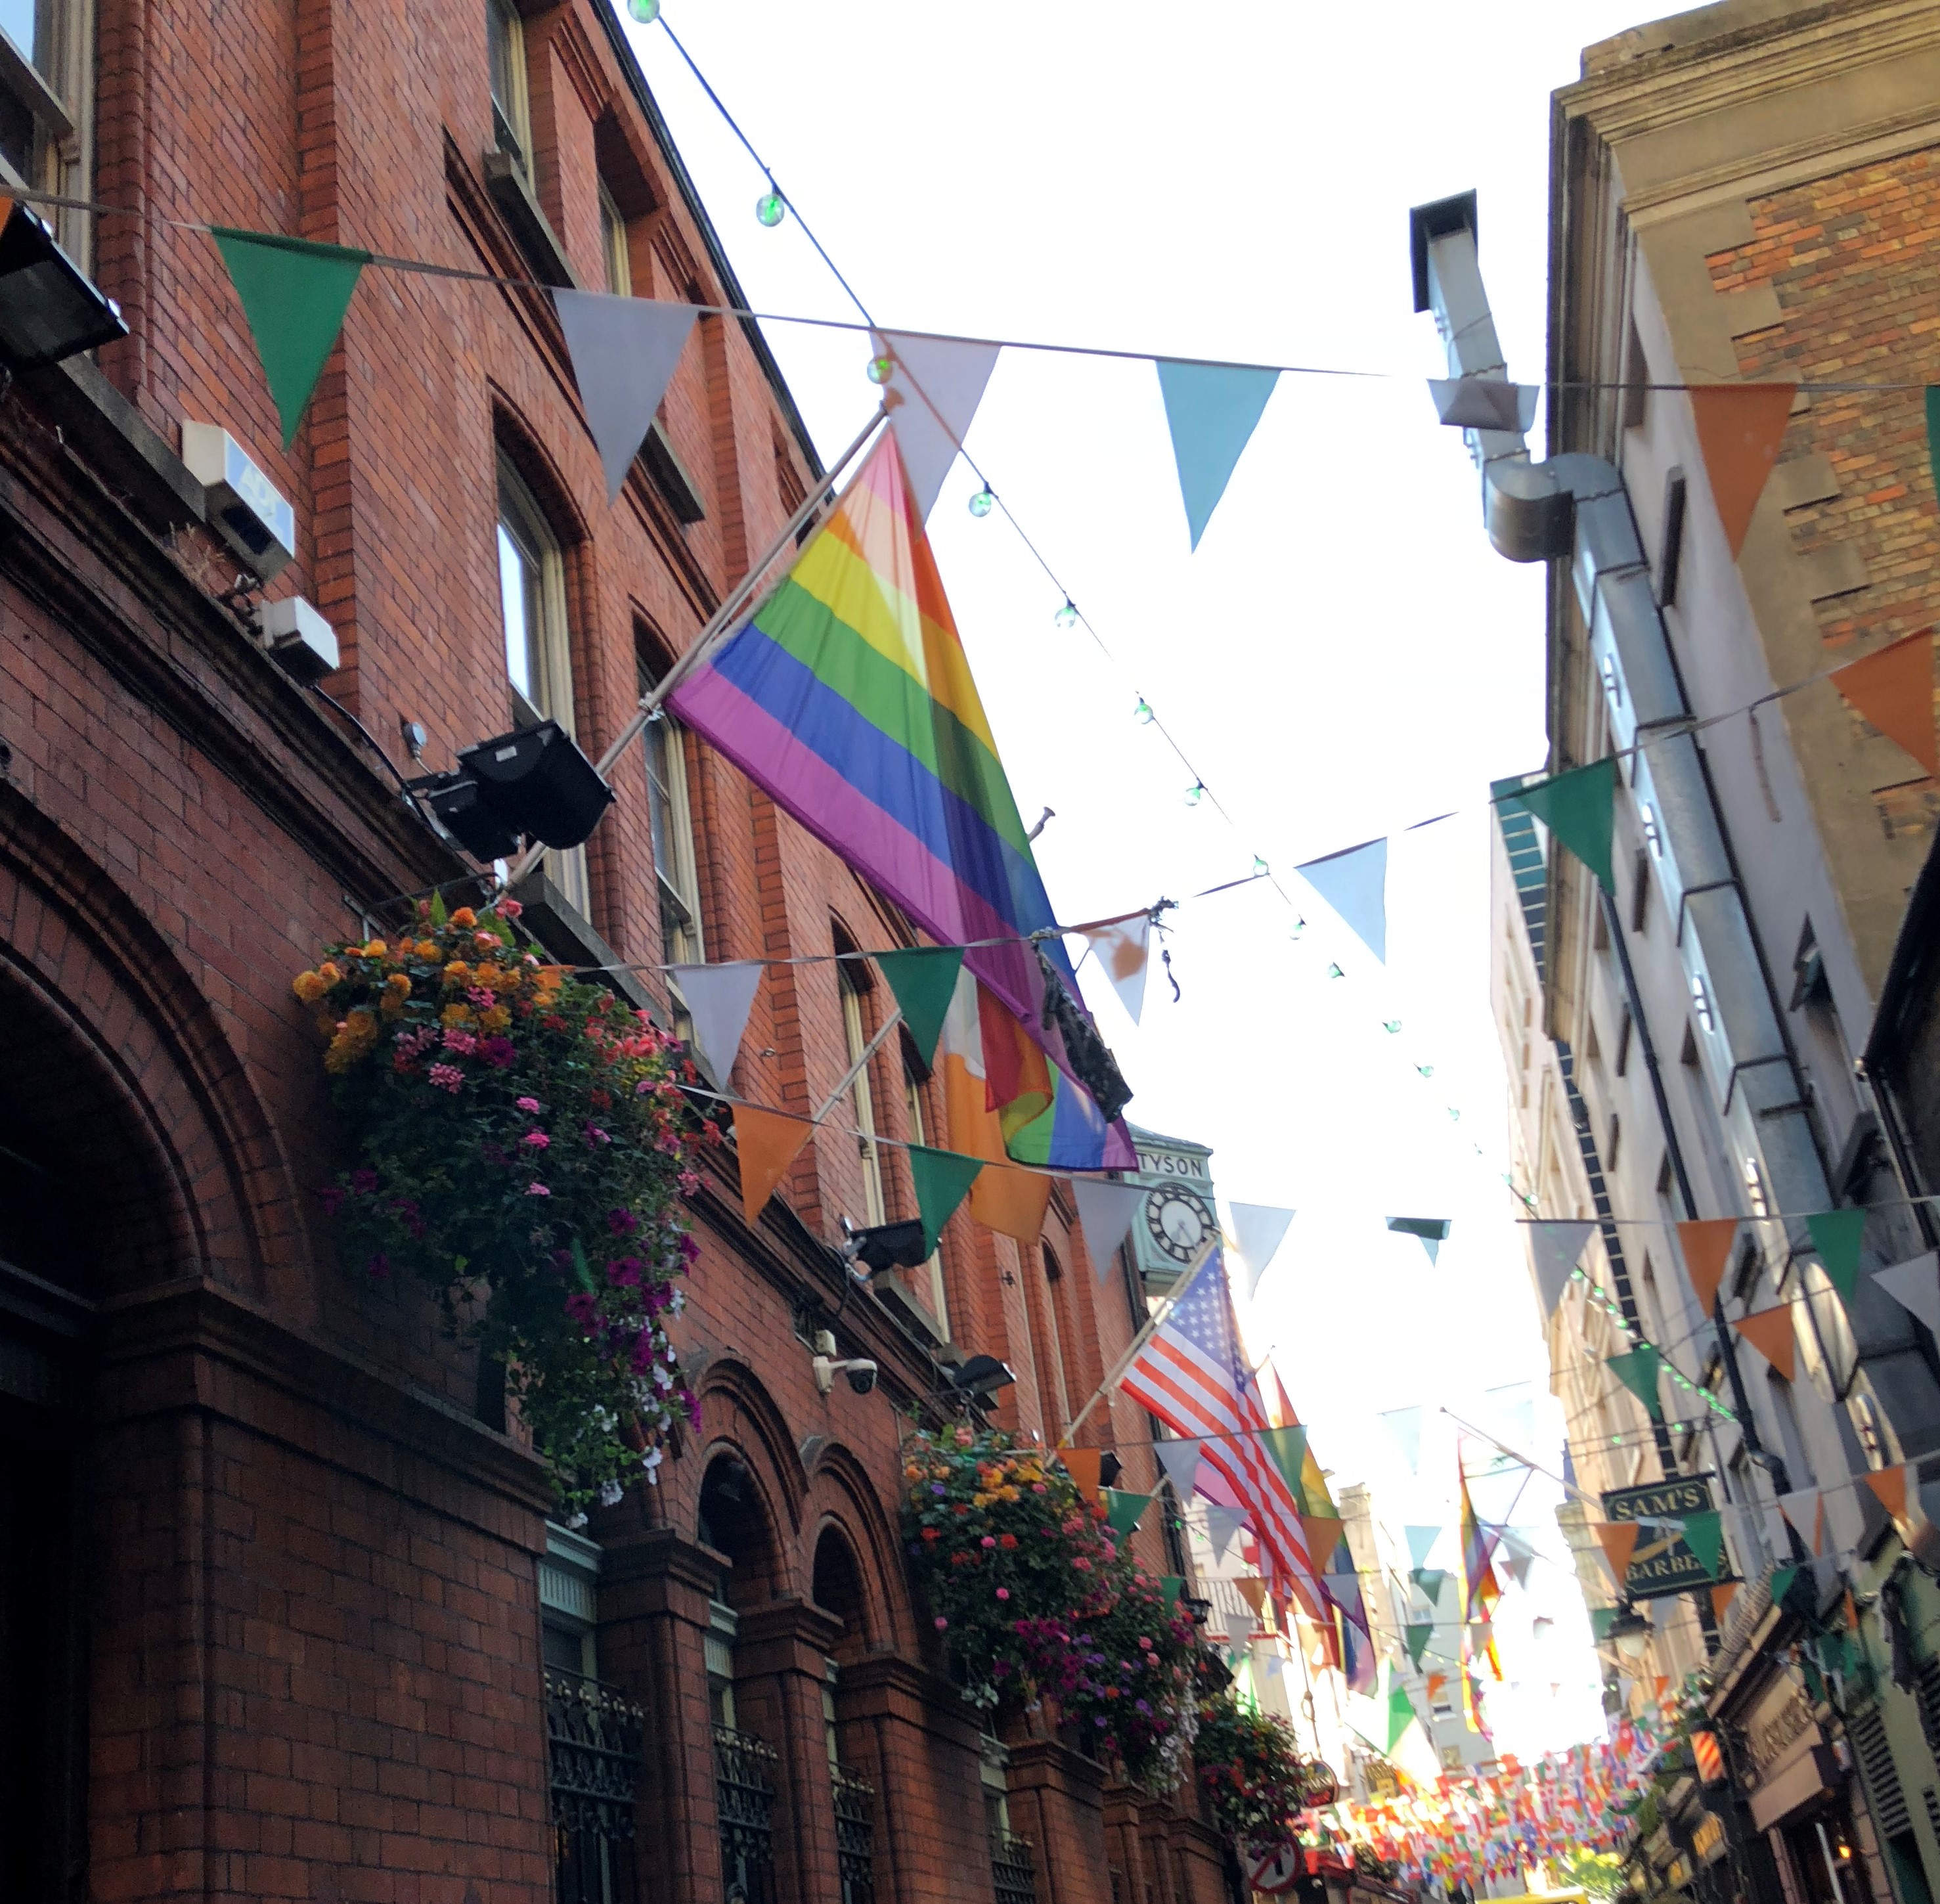 flags strung up in an allyway, Dublin, Ireland, Jul 2018